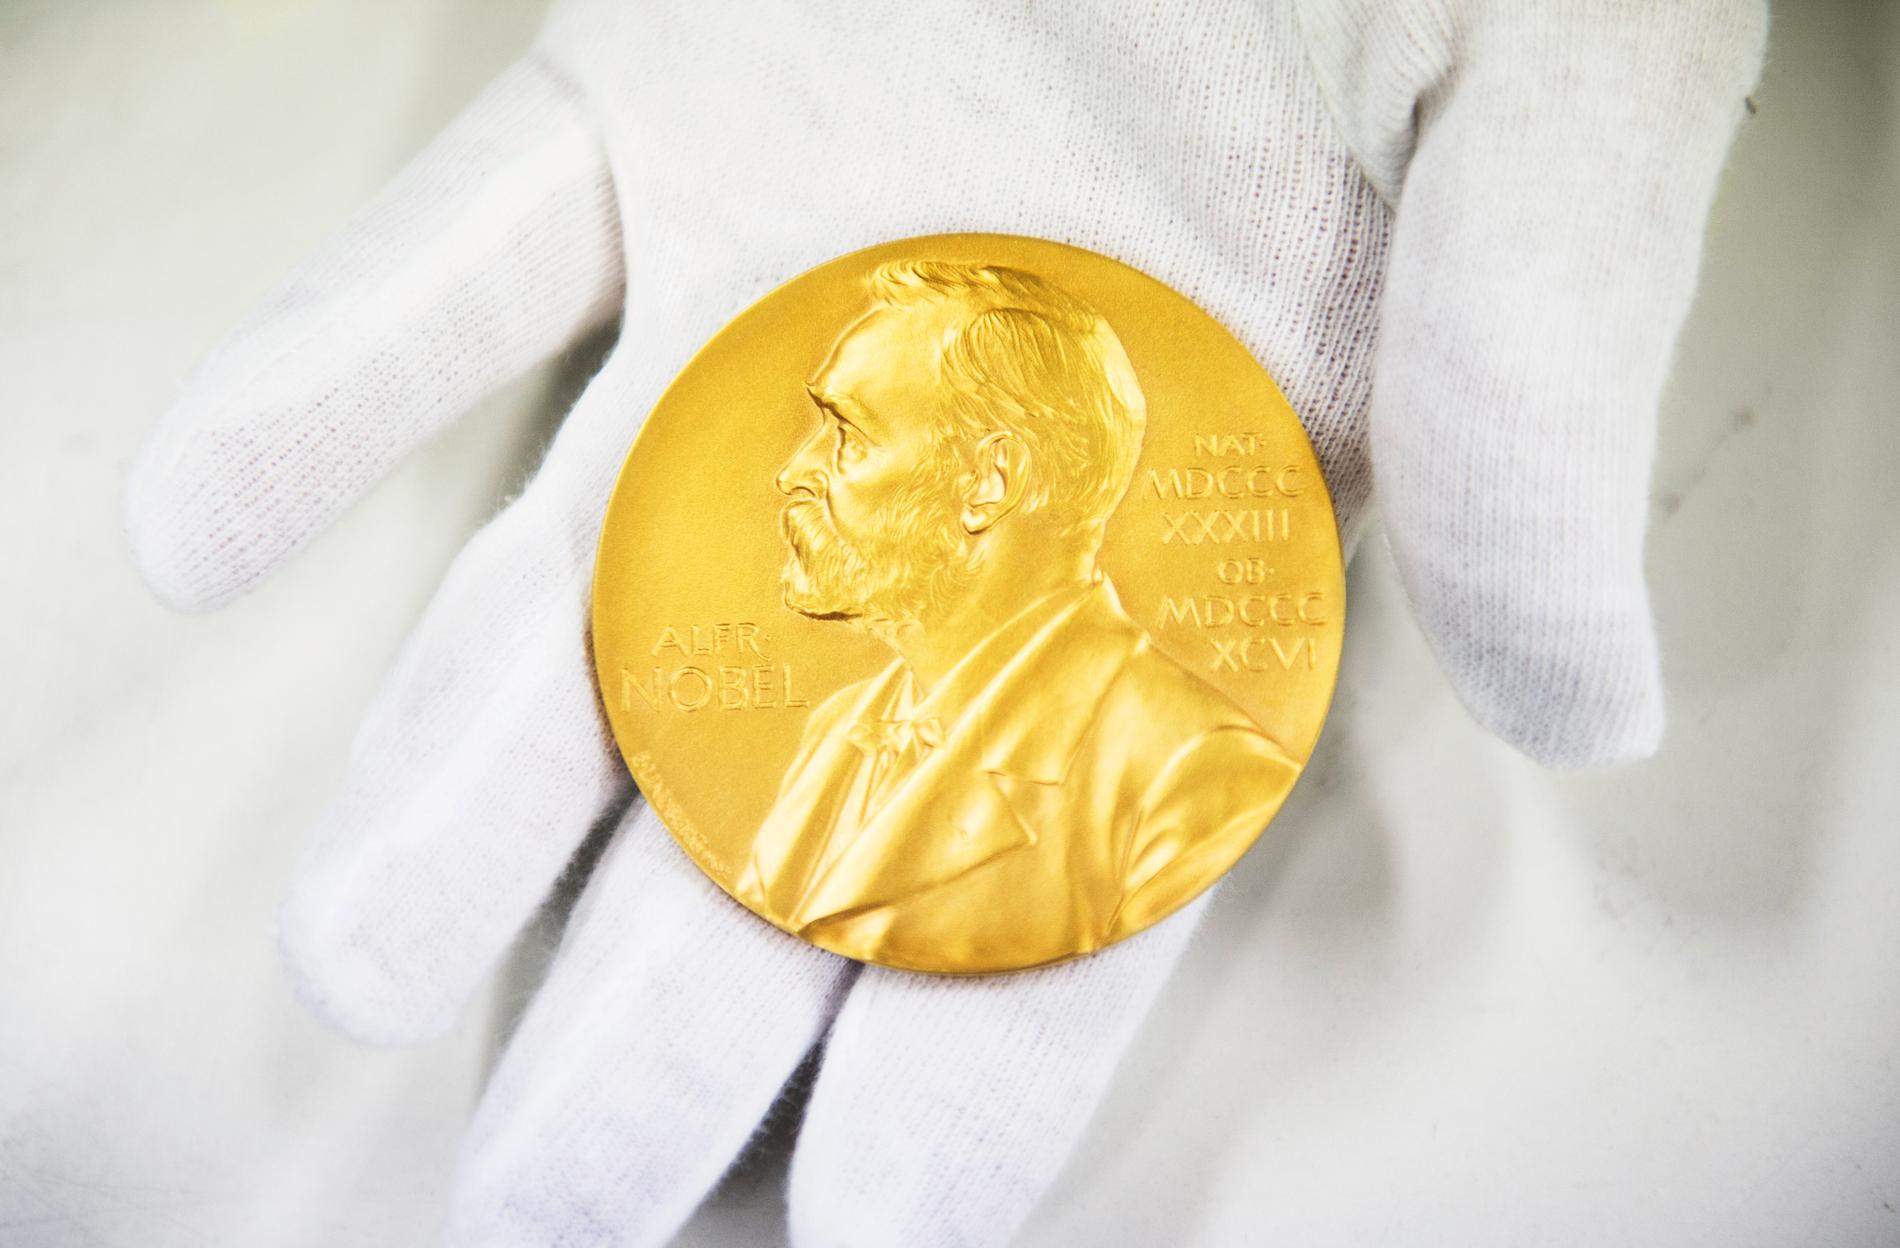 Prissumman till Nobelpristagarna höjs i år. Arkivbild.